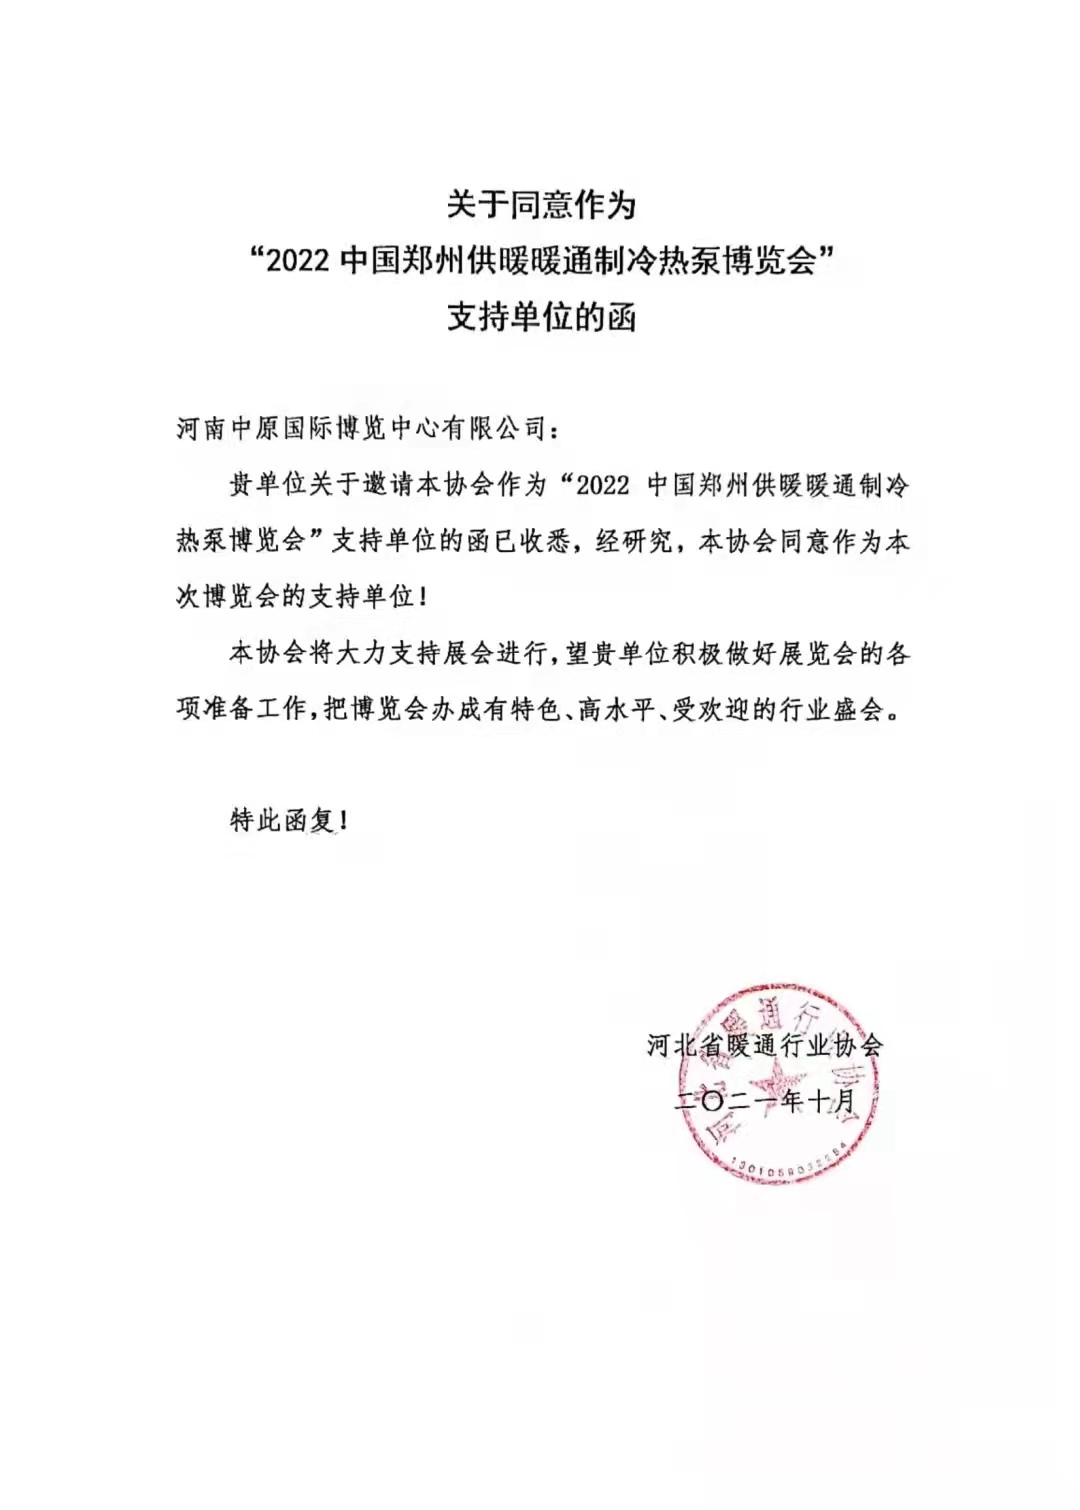 感谢河北省暖通行业协会对2022郑州制冷展的大力